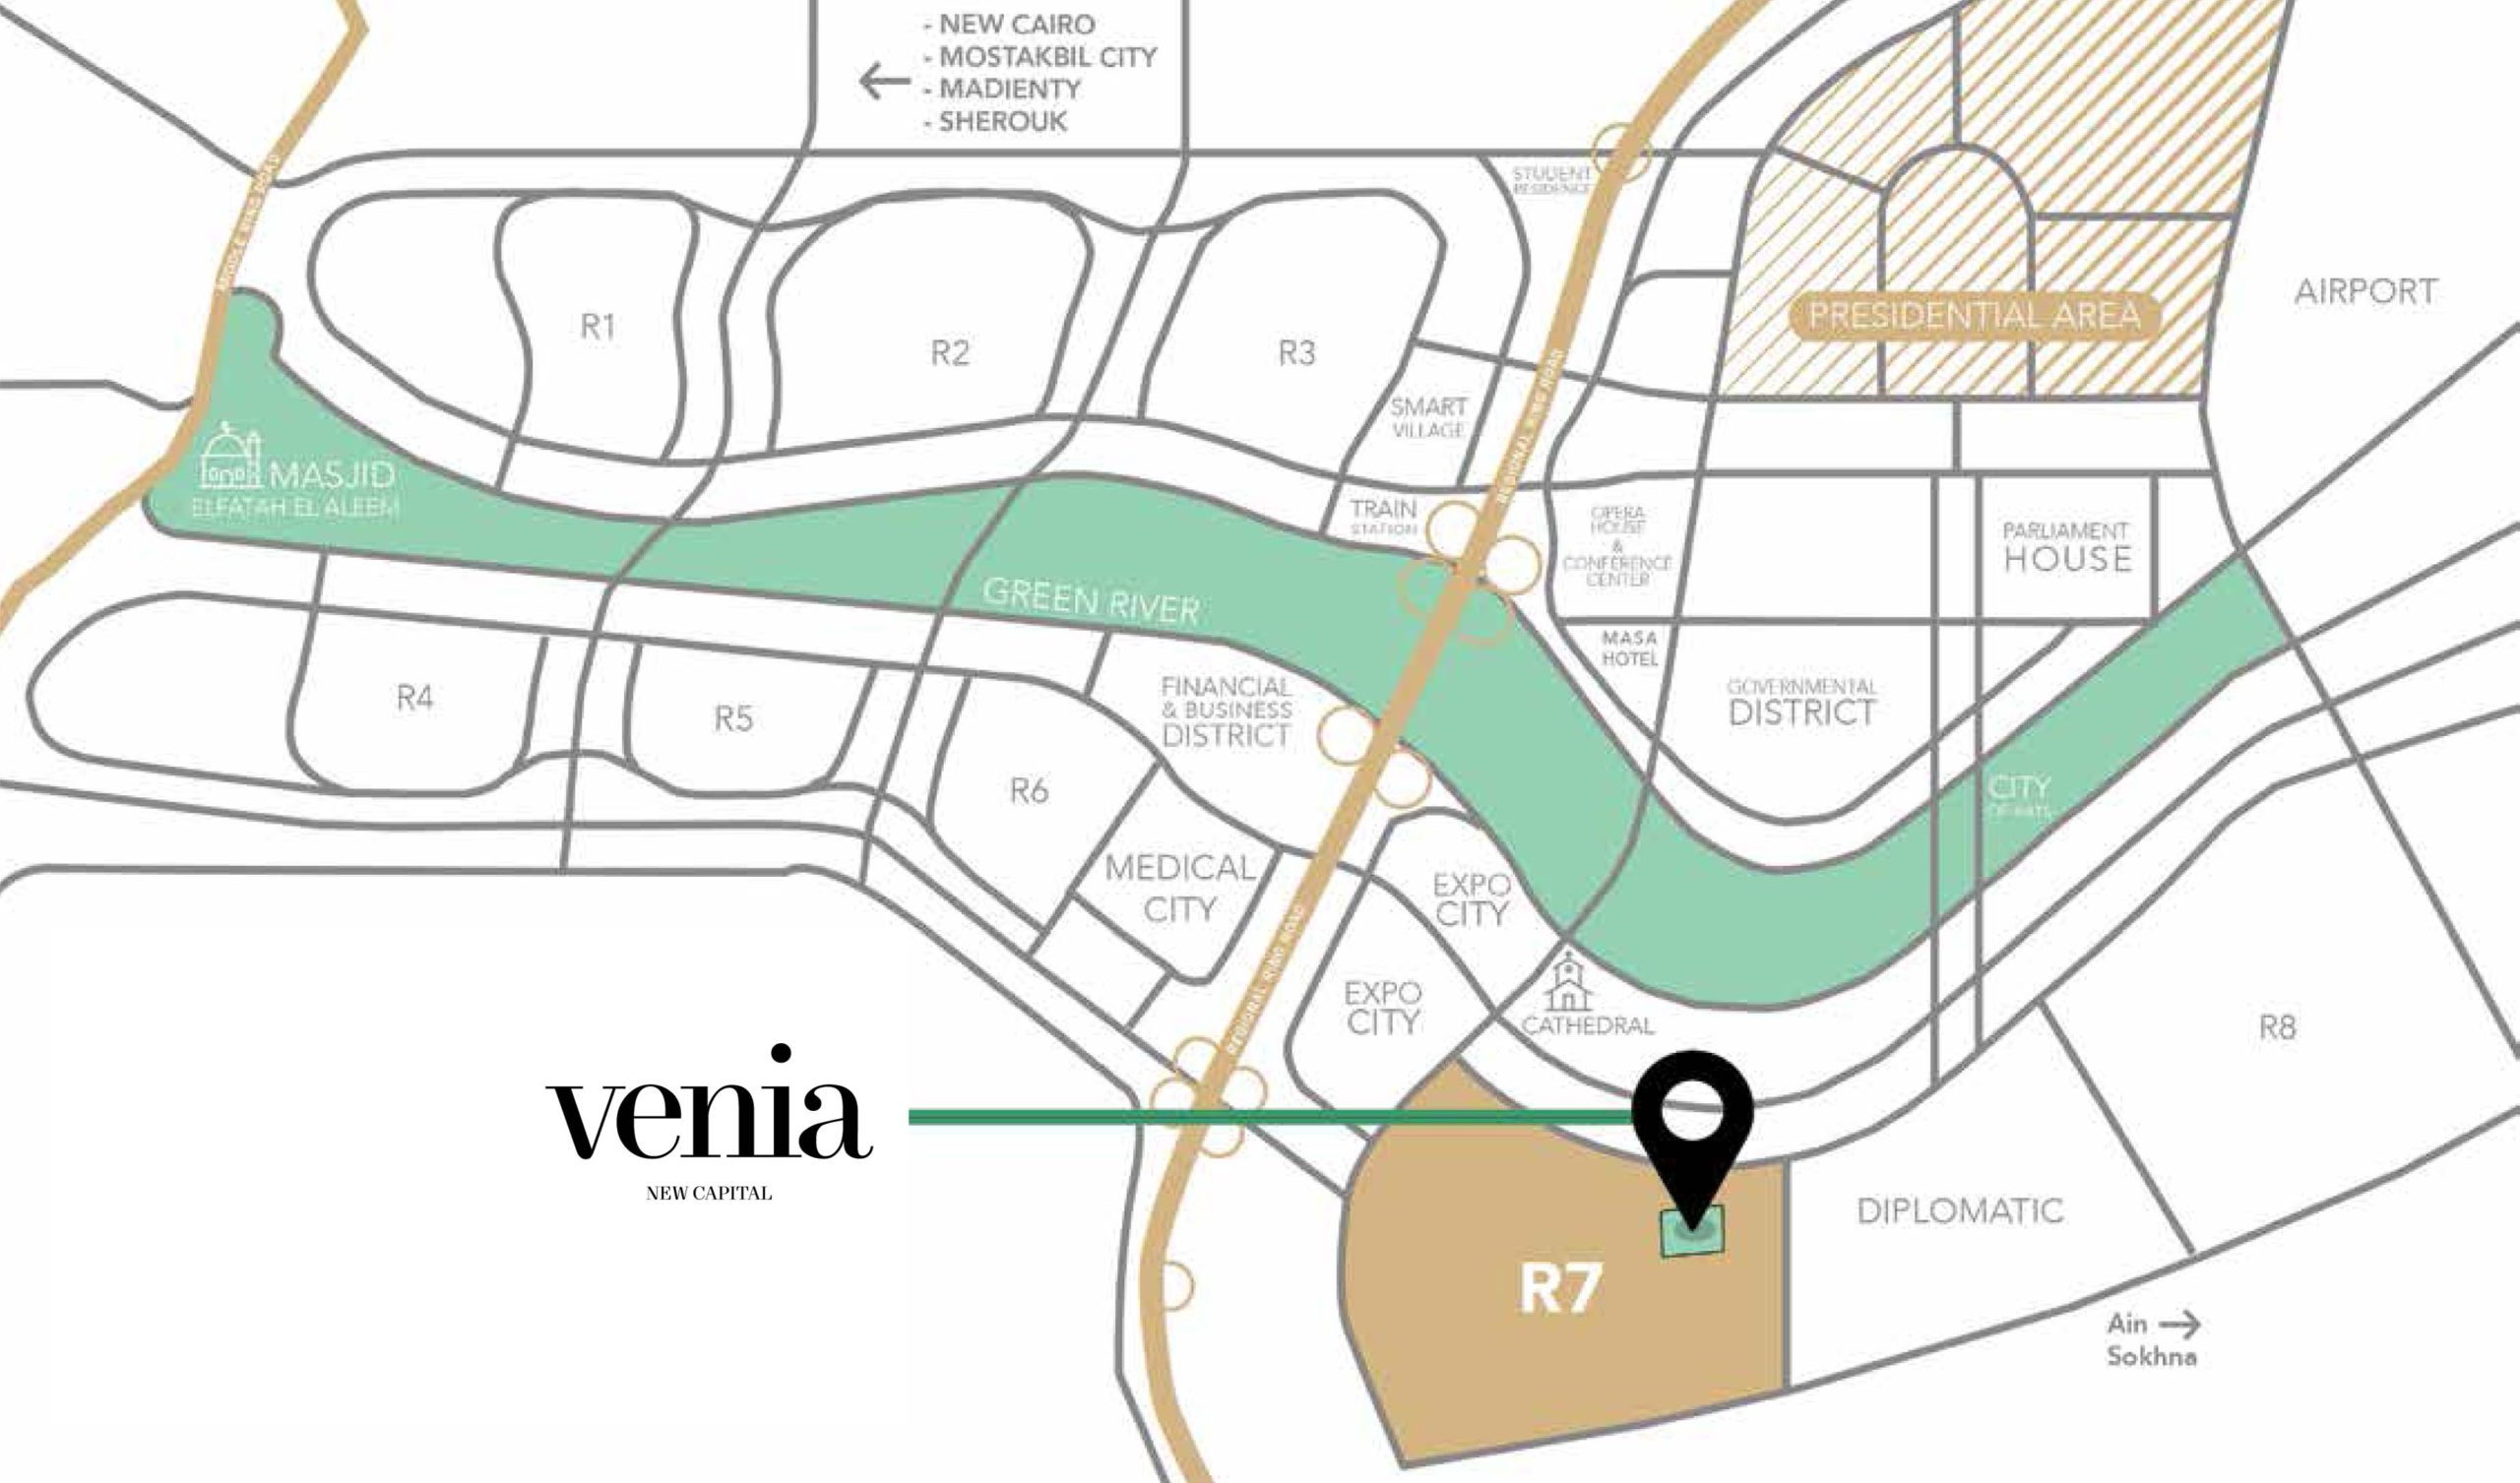 كمبوند فينيا العاصمة الادارية الجديدة - Compound VENIA New Capital